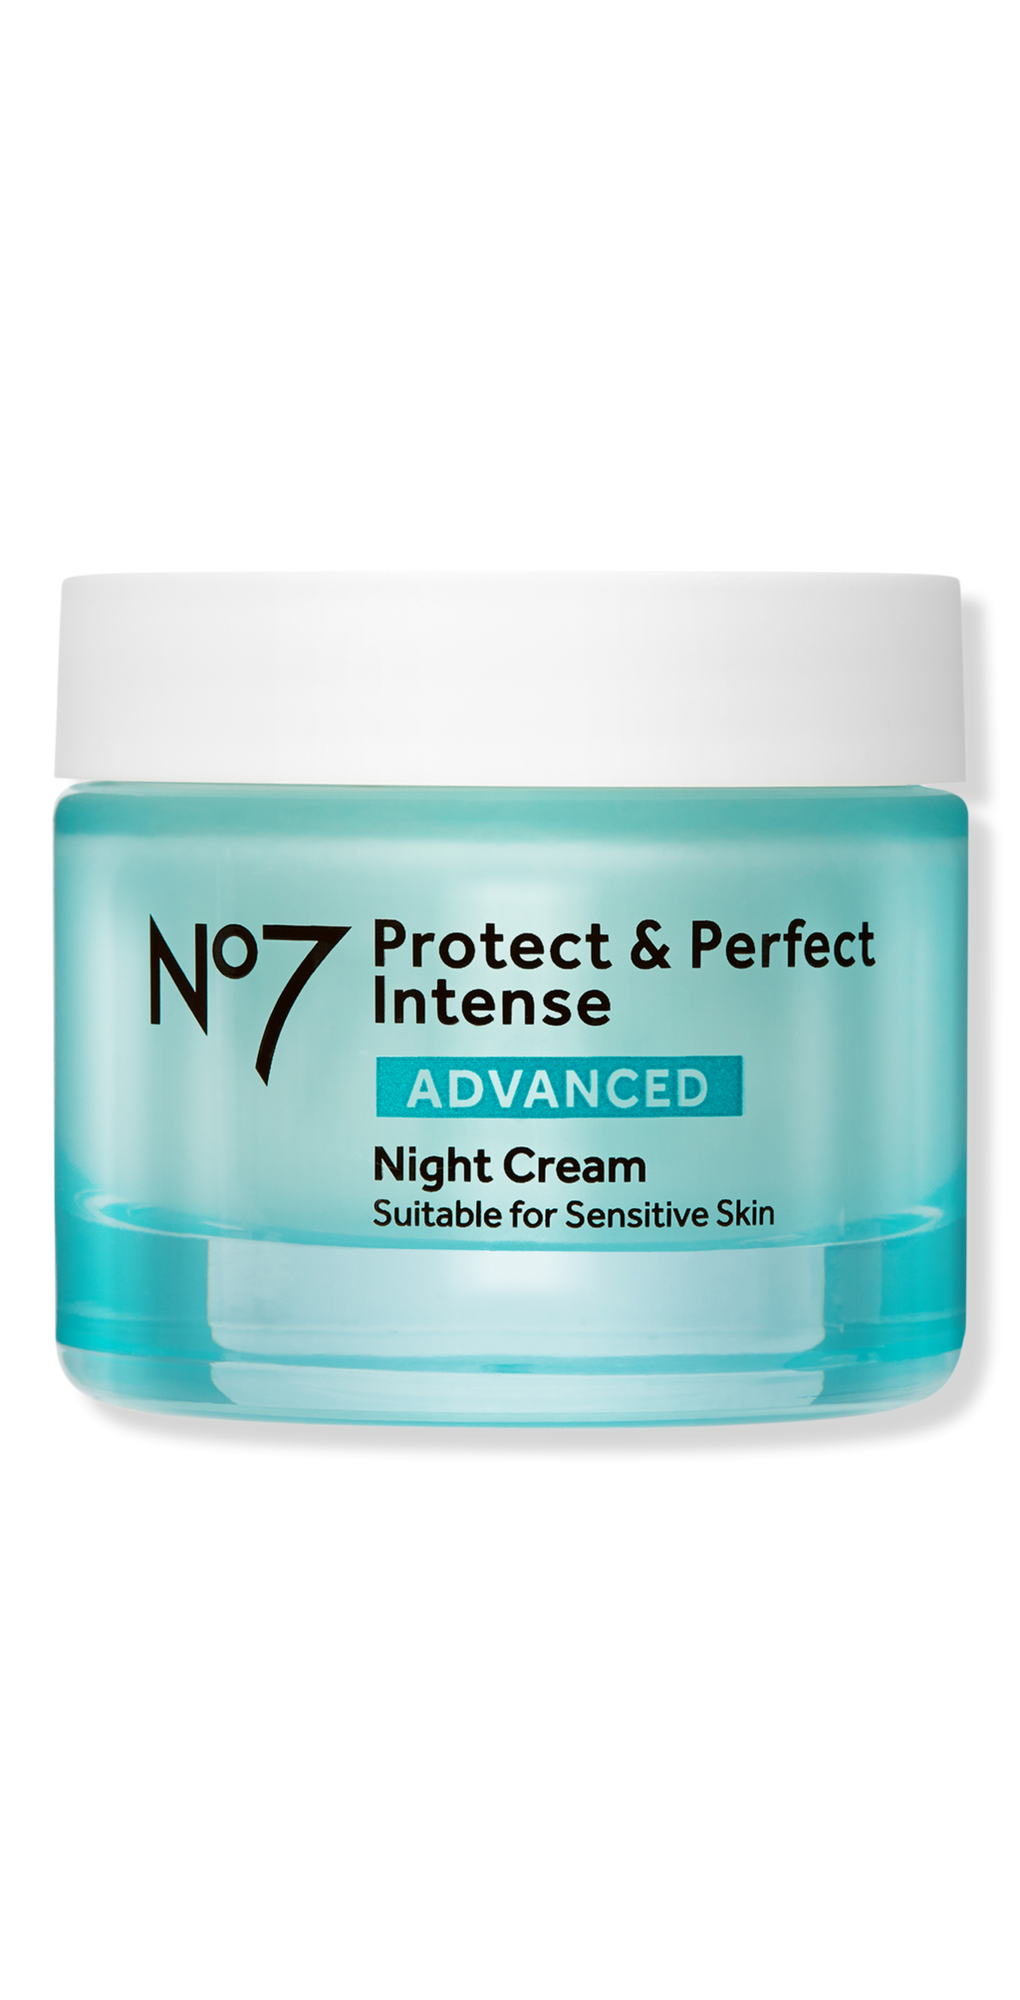 No7 Protect & Perfect Intense Advanced Night Cream - 1.69 fl oz